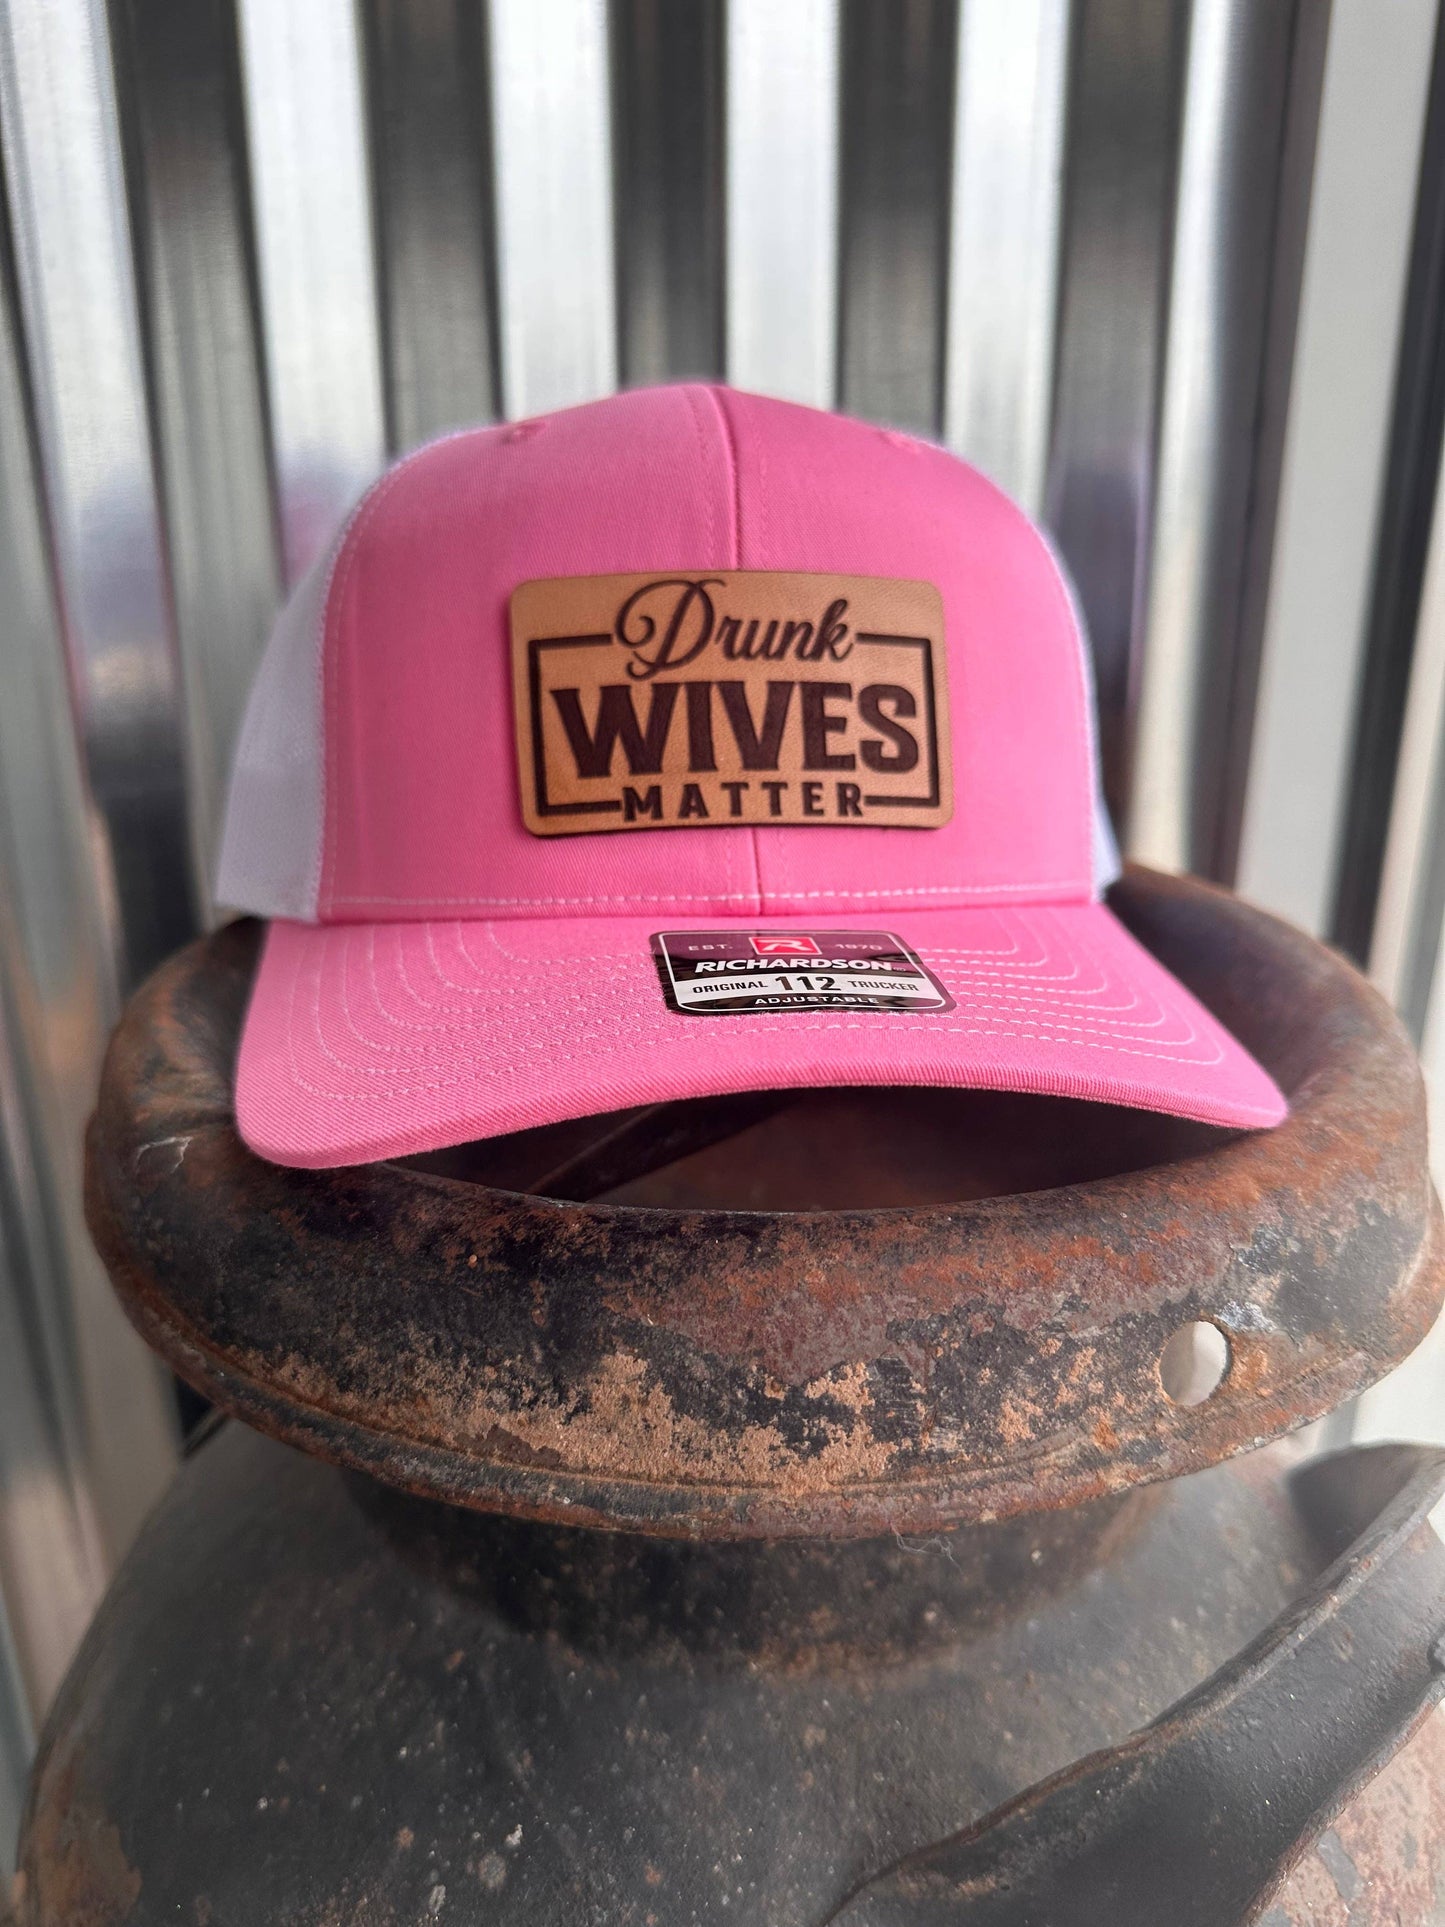 Drunk wives matter hat: Pink Hawaiian